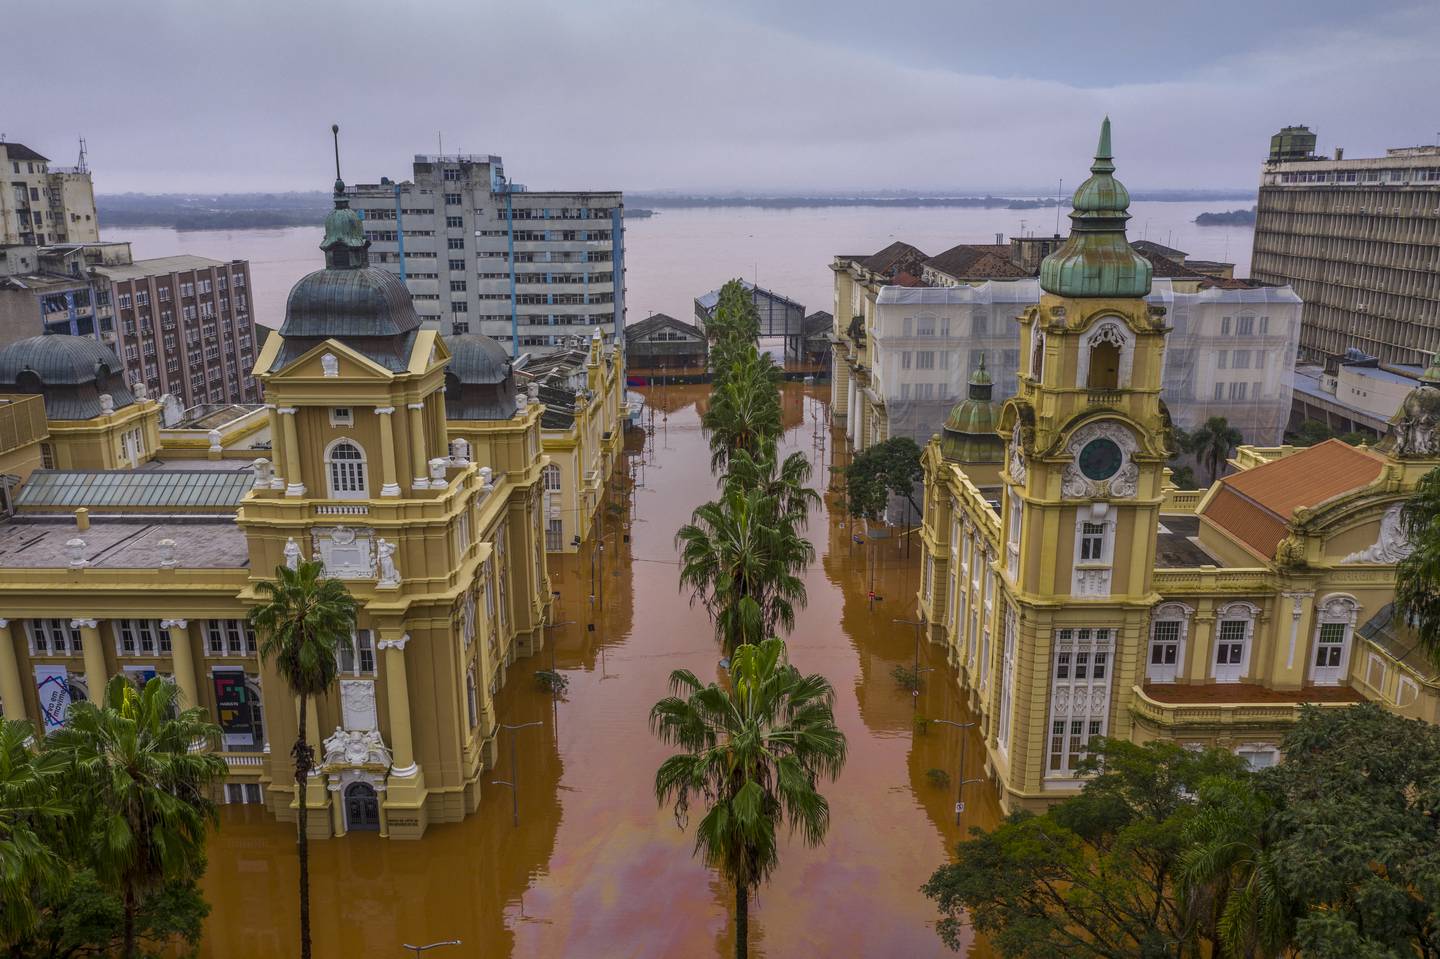 Esta fotografía publicada por la Secretaría de Cultura del Estado de Rio Grande do Sul (SEDAC) muestra una vista aérea del Museo de Arte de Rio Grande do Sul (MARGS) inundado en el centro de la ciudad de Porto Alegre, estado de Rio Grande do Sul, Brasil.